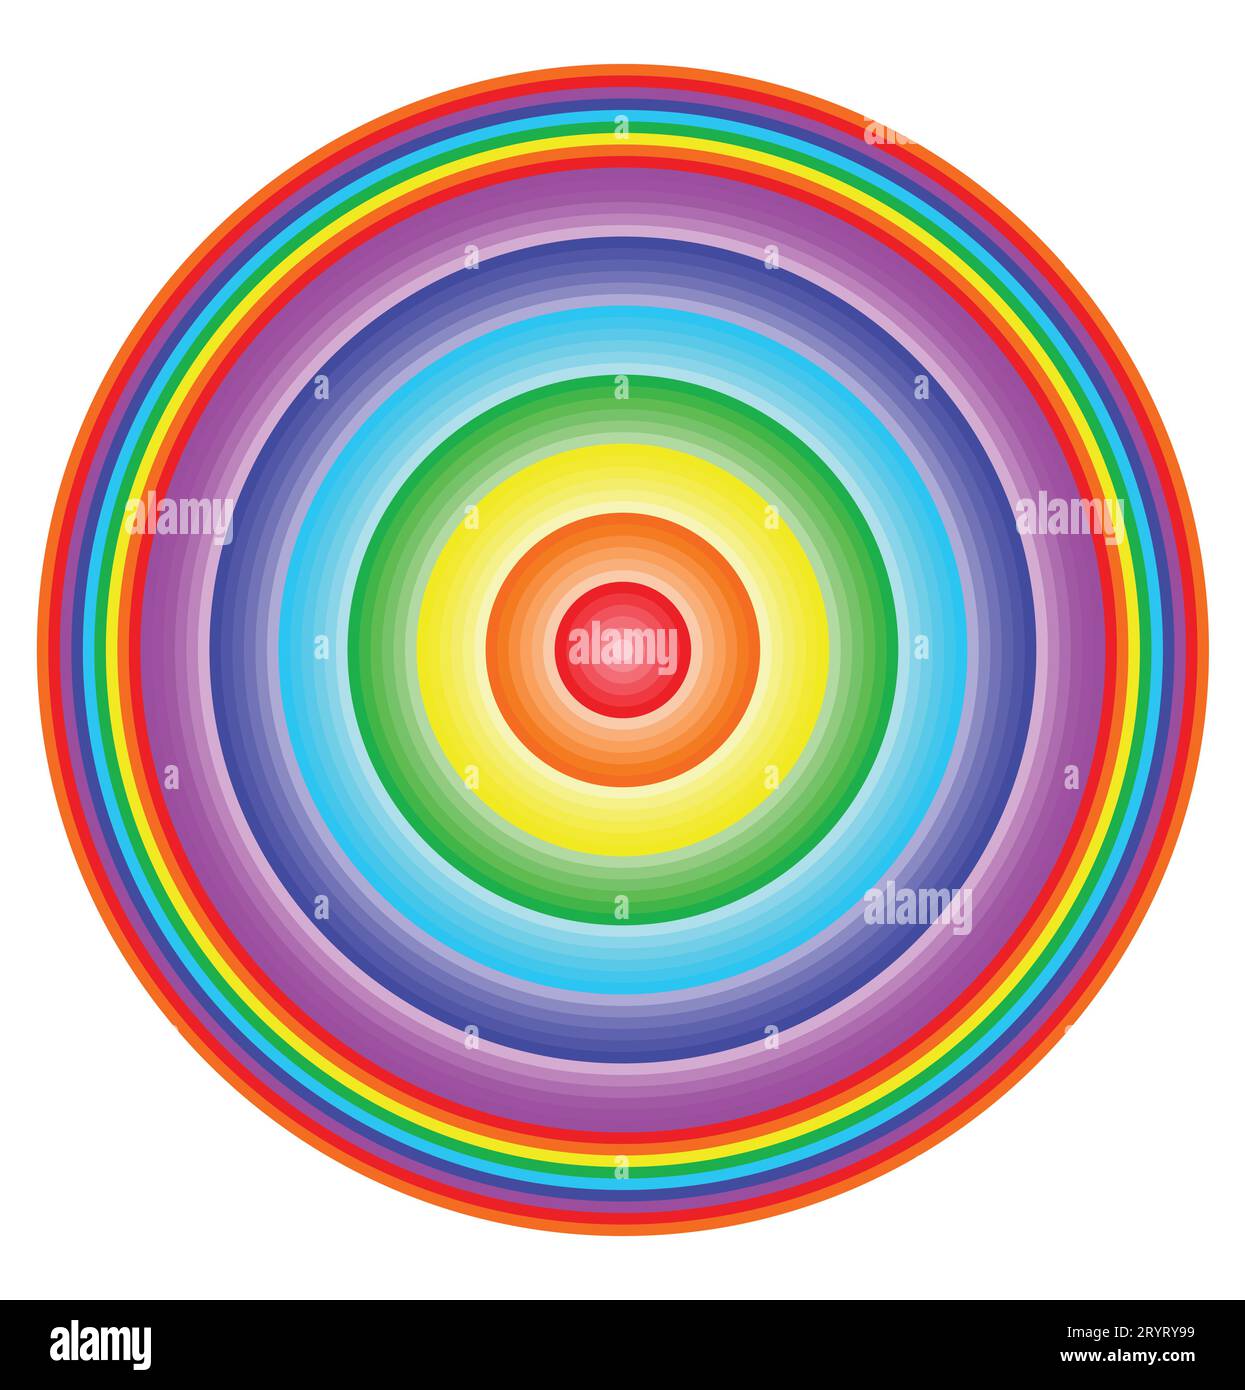 Farbenfrohe Regenbogenfarbe von niedrigem bis hohem Kreis. Farbenfroher Regenbogen. Buntes Regenbogensymbol oder flaches Farbspektrum zur Verwendung als Apps und Websites Stock Vektor